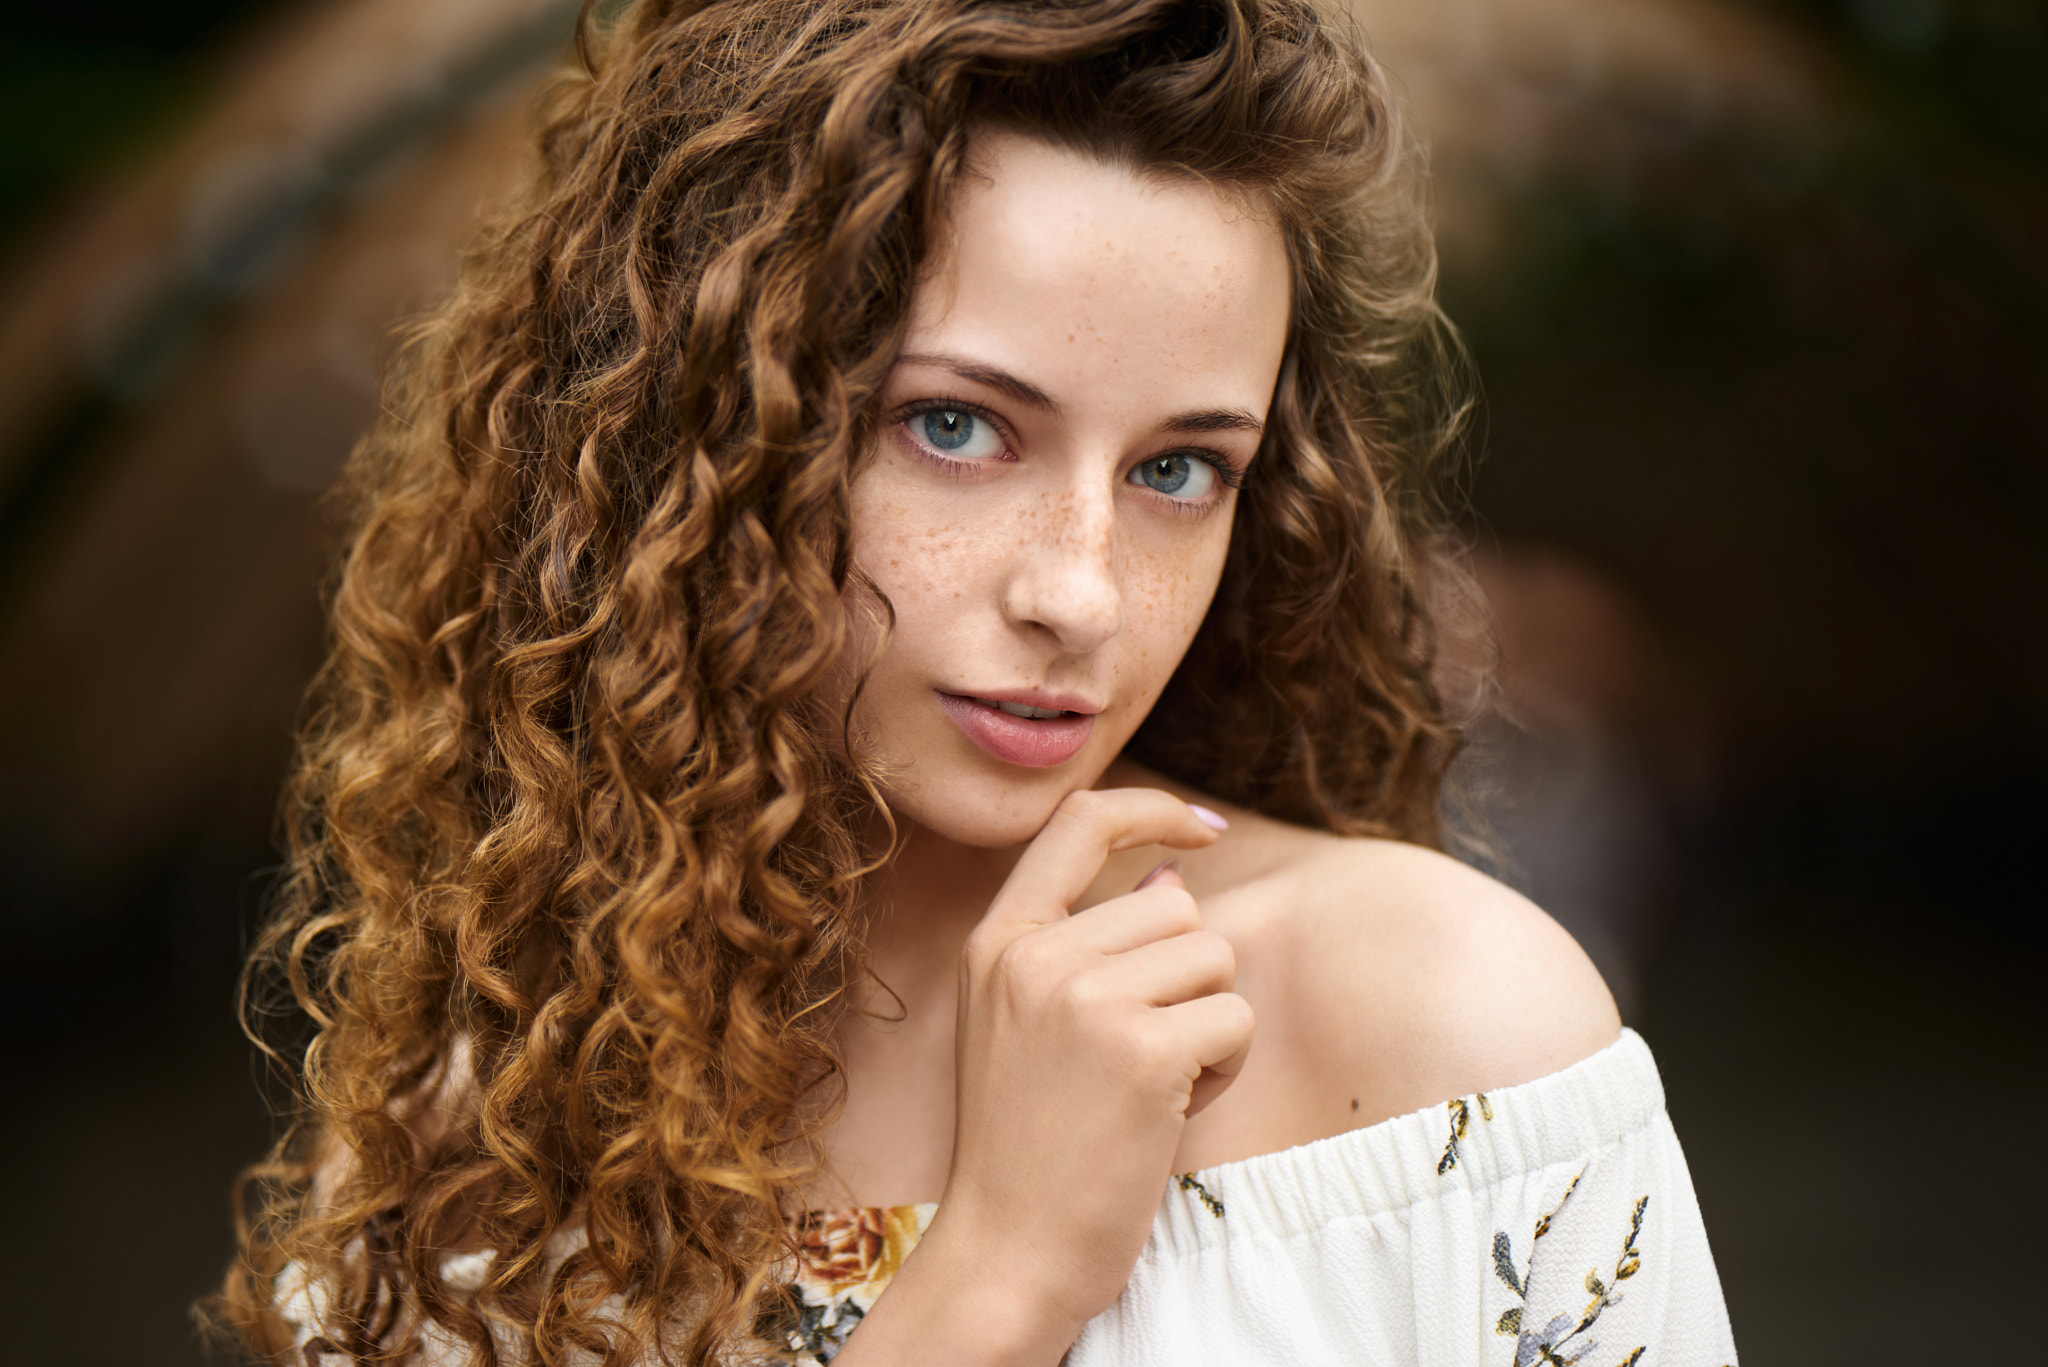 Ivan Ustinov Women Brunette Long Hair Curly Hair Blue Eyes Looking At Viewer Freckles Bare Shoulders 2048x1367